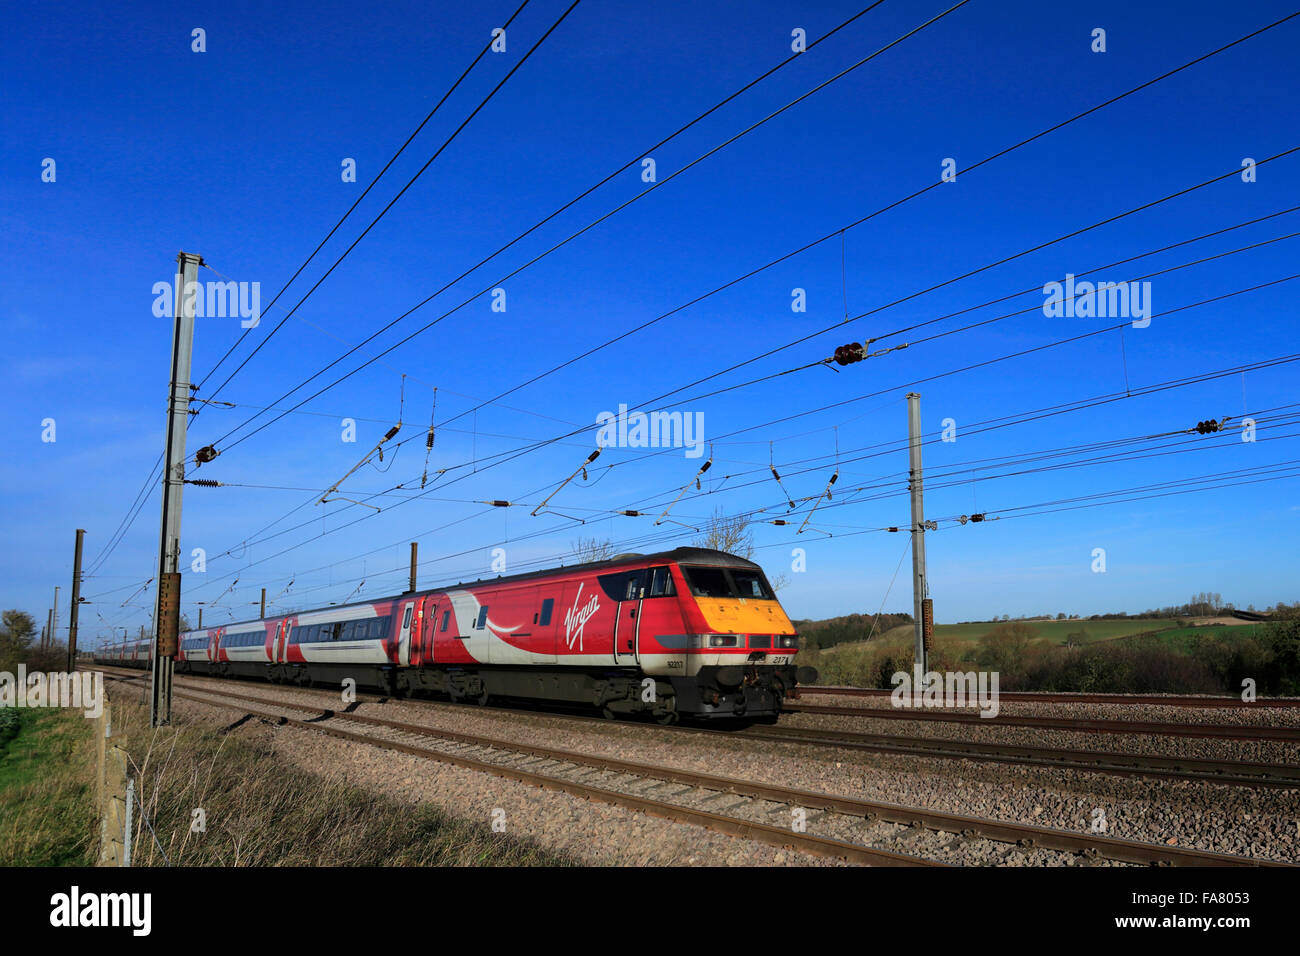 82217 treni del Virgin, alta velocità del treno elettrico, East Coast Main Line Railway, nei pressi del villaggio di Creeton, Lincolnshire, Inghilterra Foto Stock